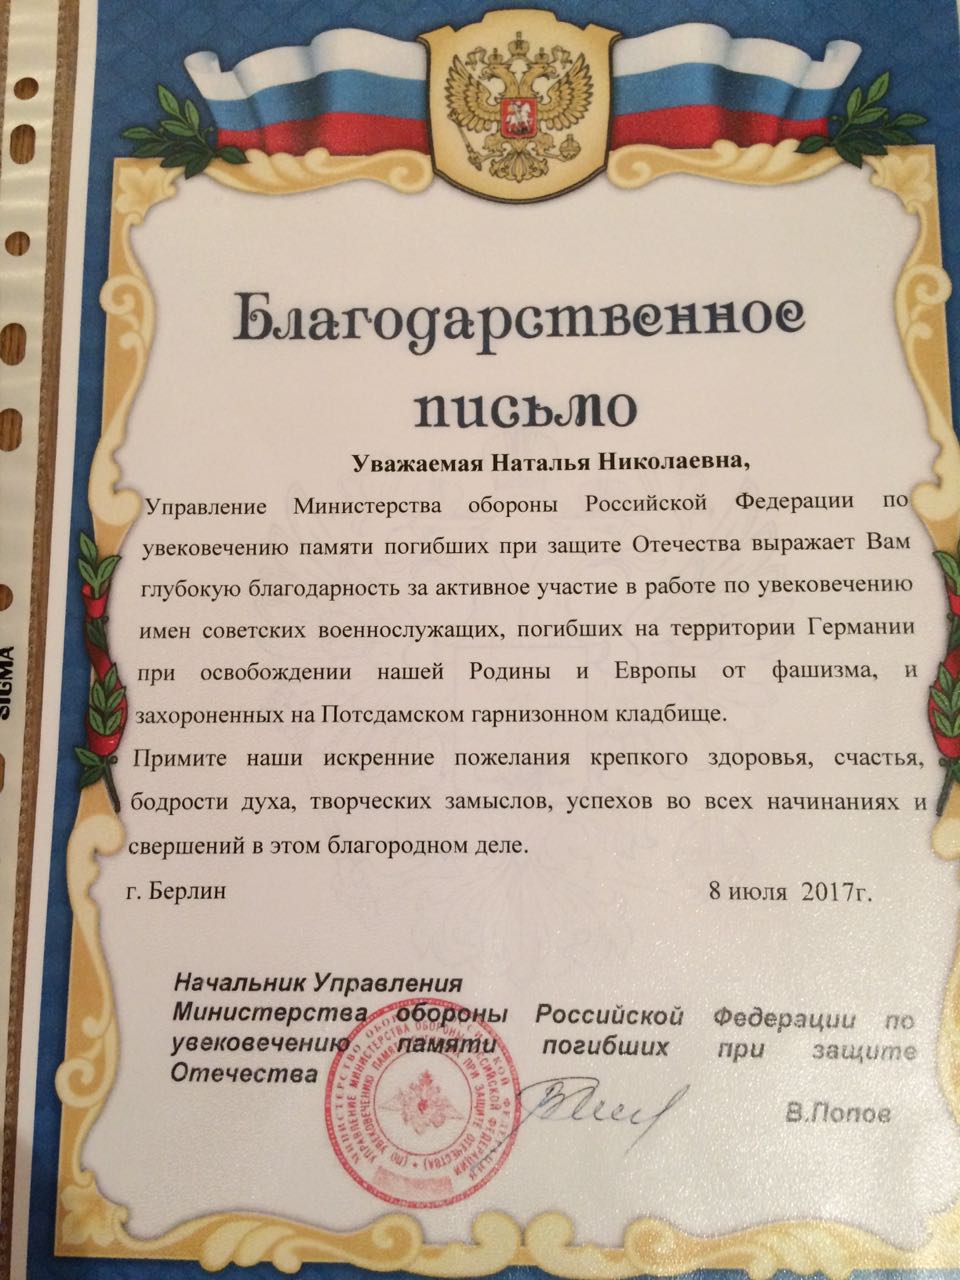 Сегодня, наш друг Йенс и его жена Наташа, получили благодарственное письмо от Мин Обороны РФ